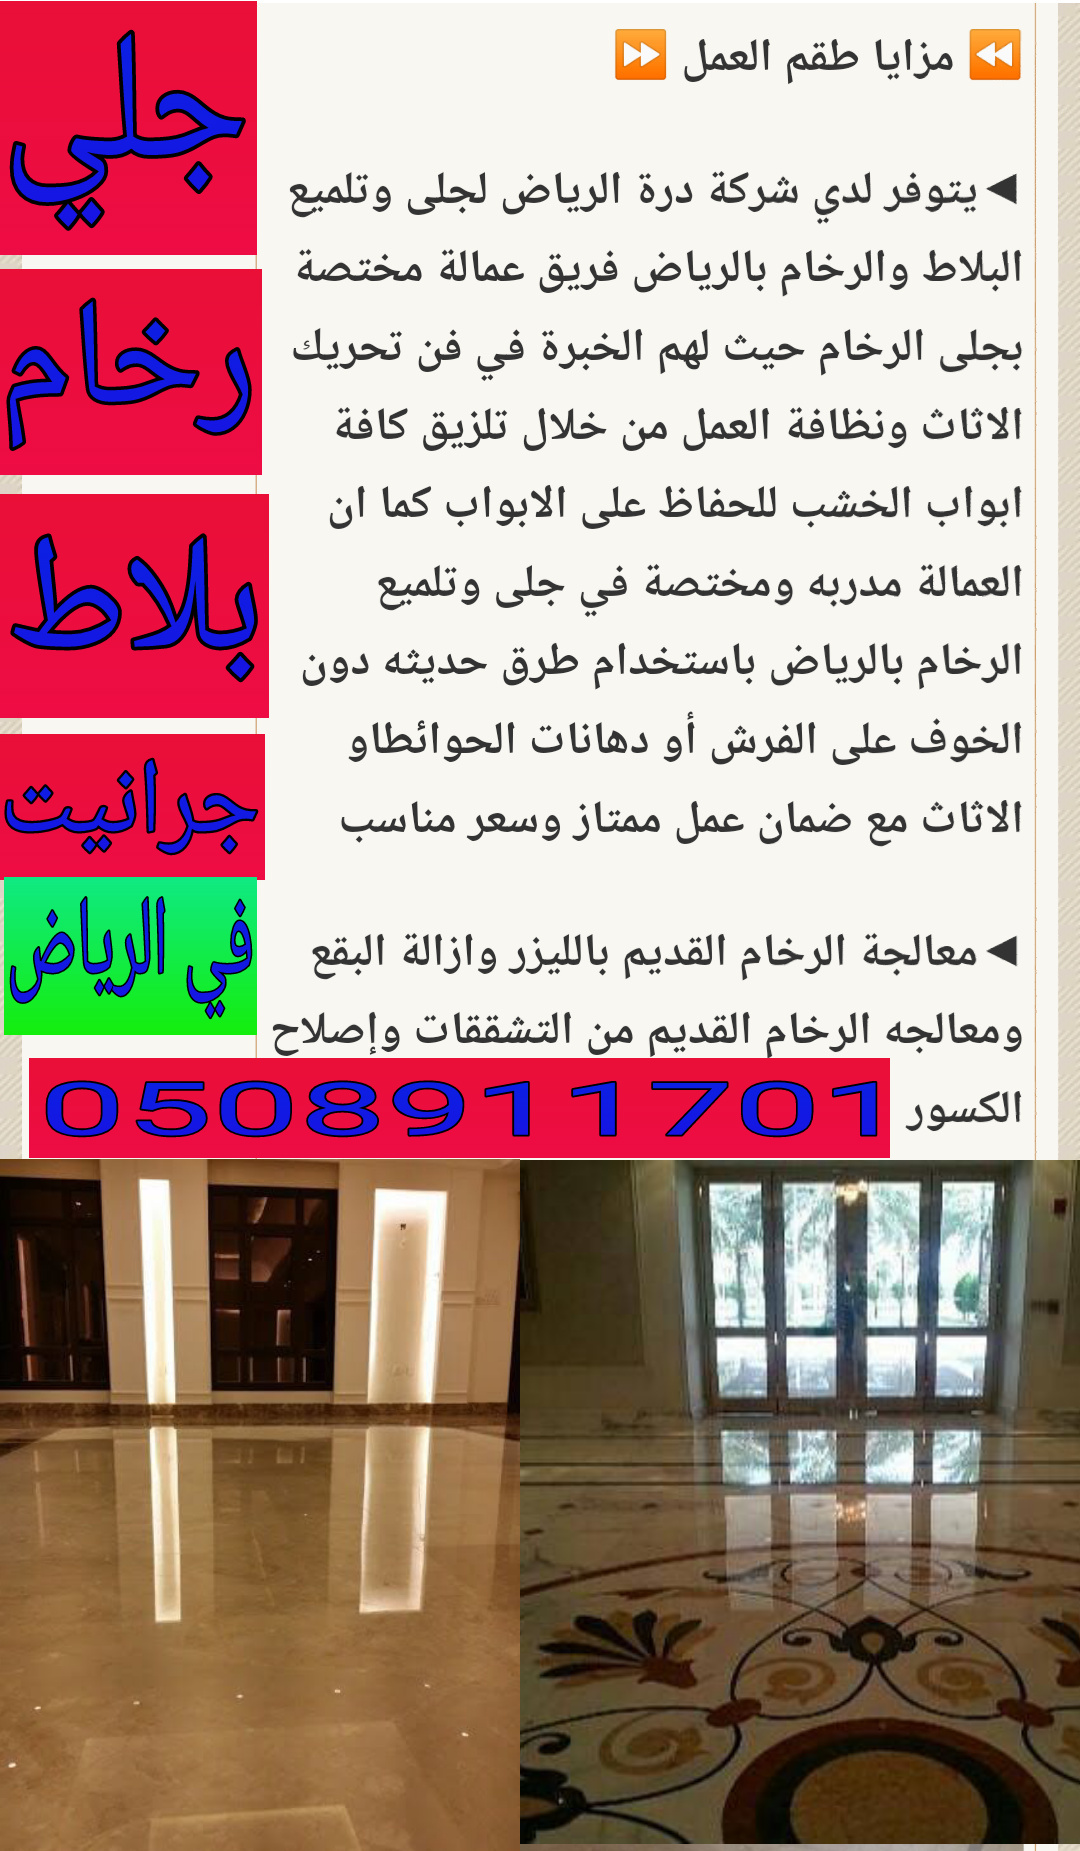 شركة درة الرياض شركة جلي رخام بالرياض 0508911701 جلي رخام في الرياض P_1238jxri05